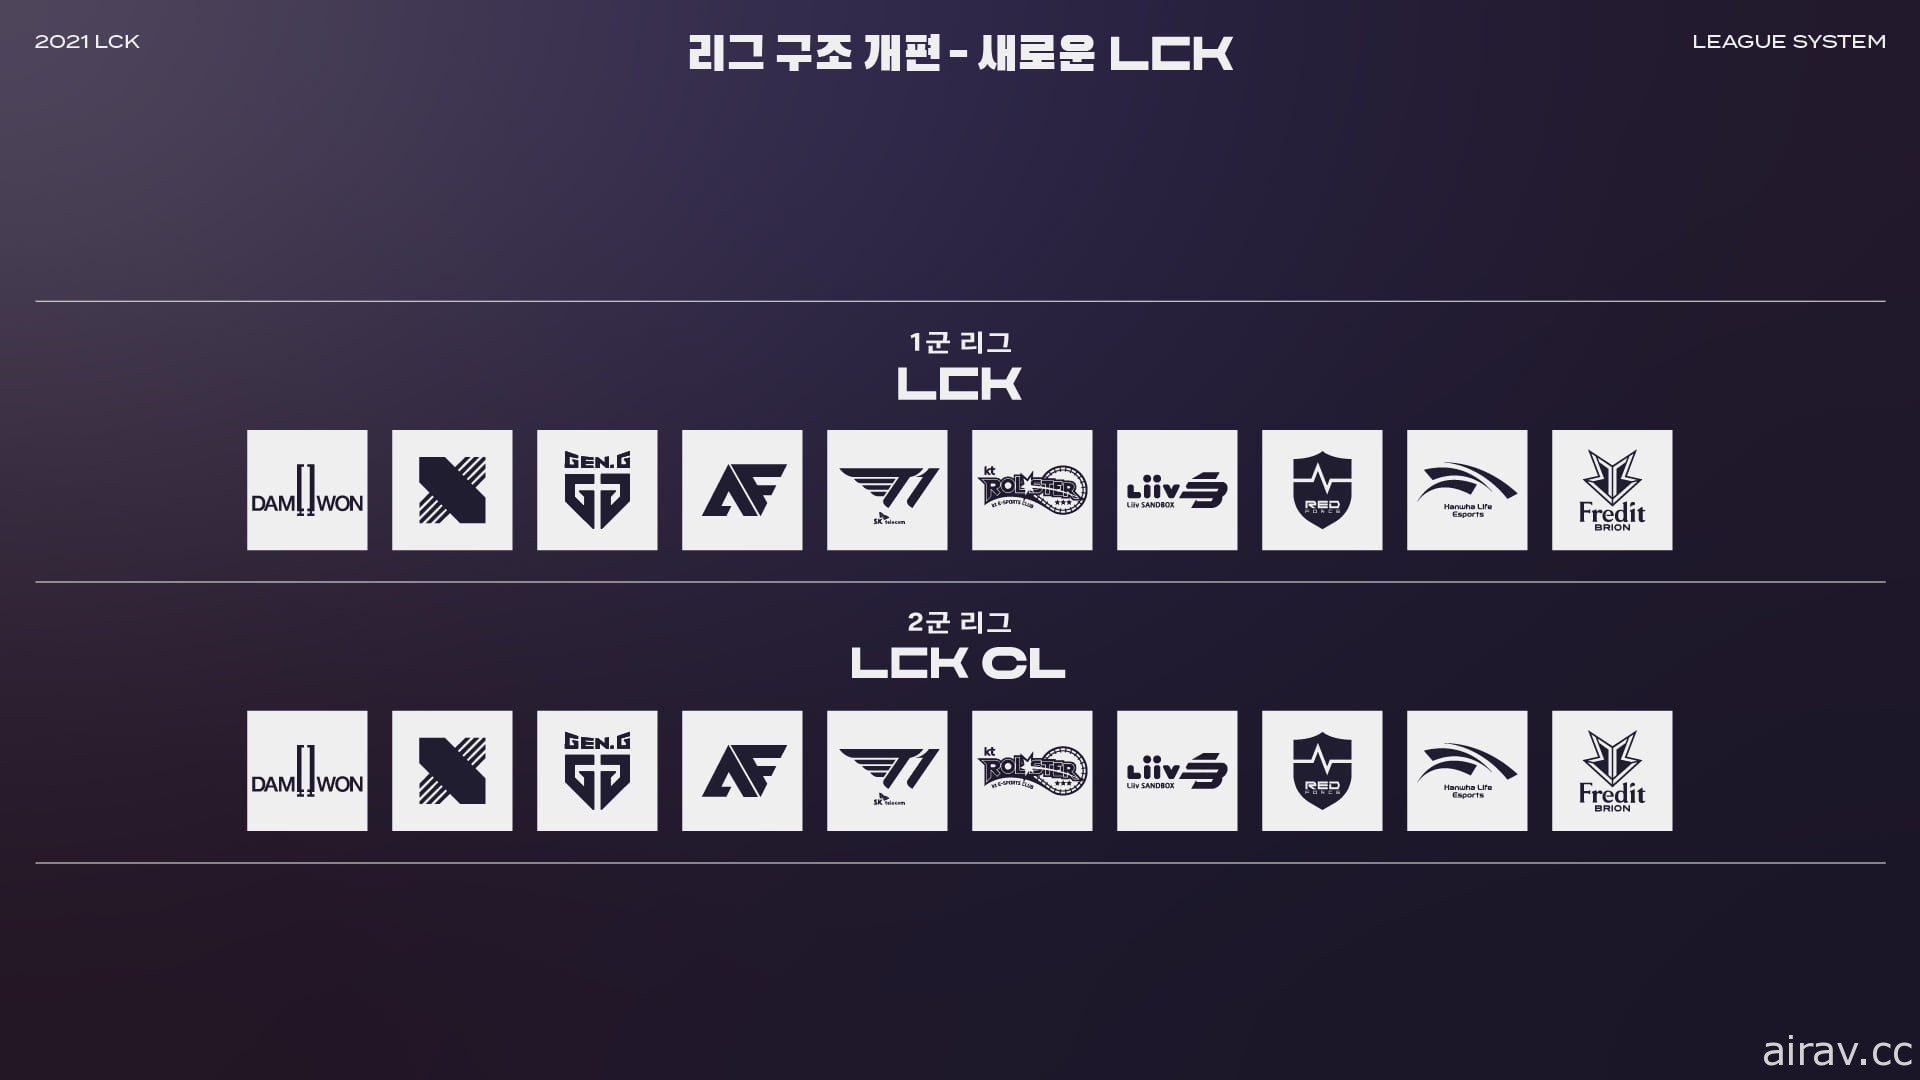 《英雄聯盟》LCK 新賽季 1 月 13 日開戰 公開各隊選手名單與賽程